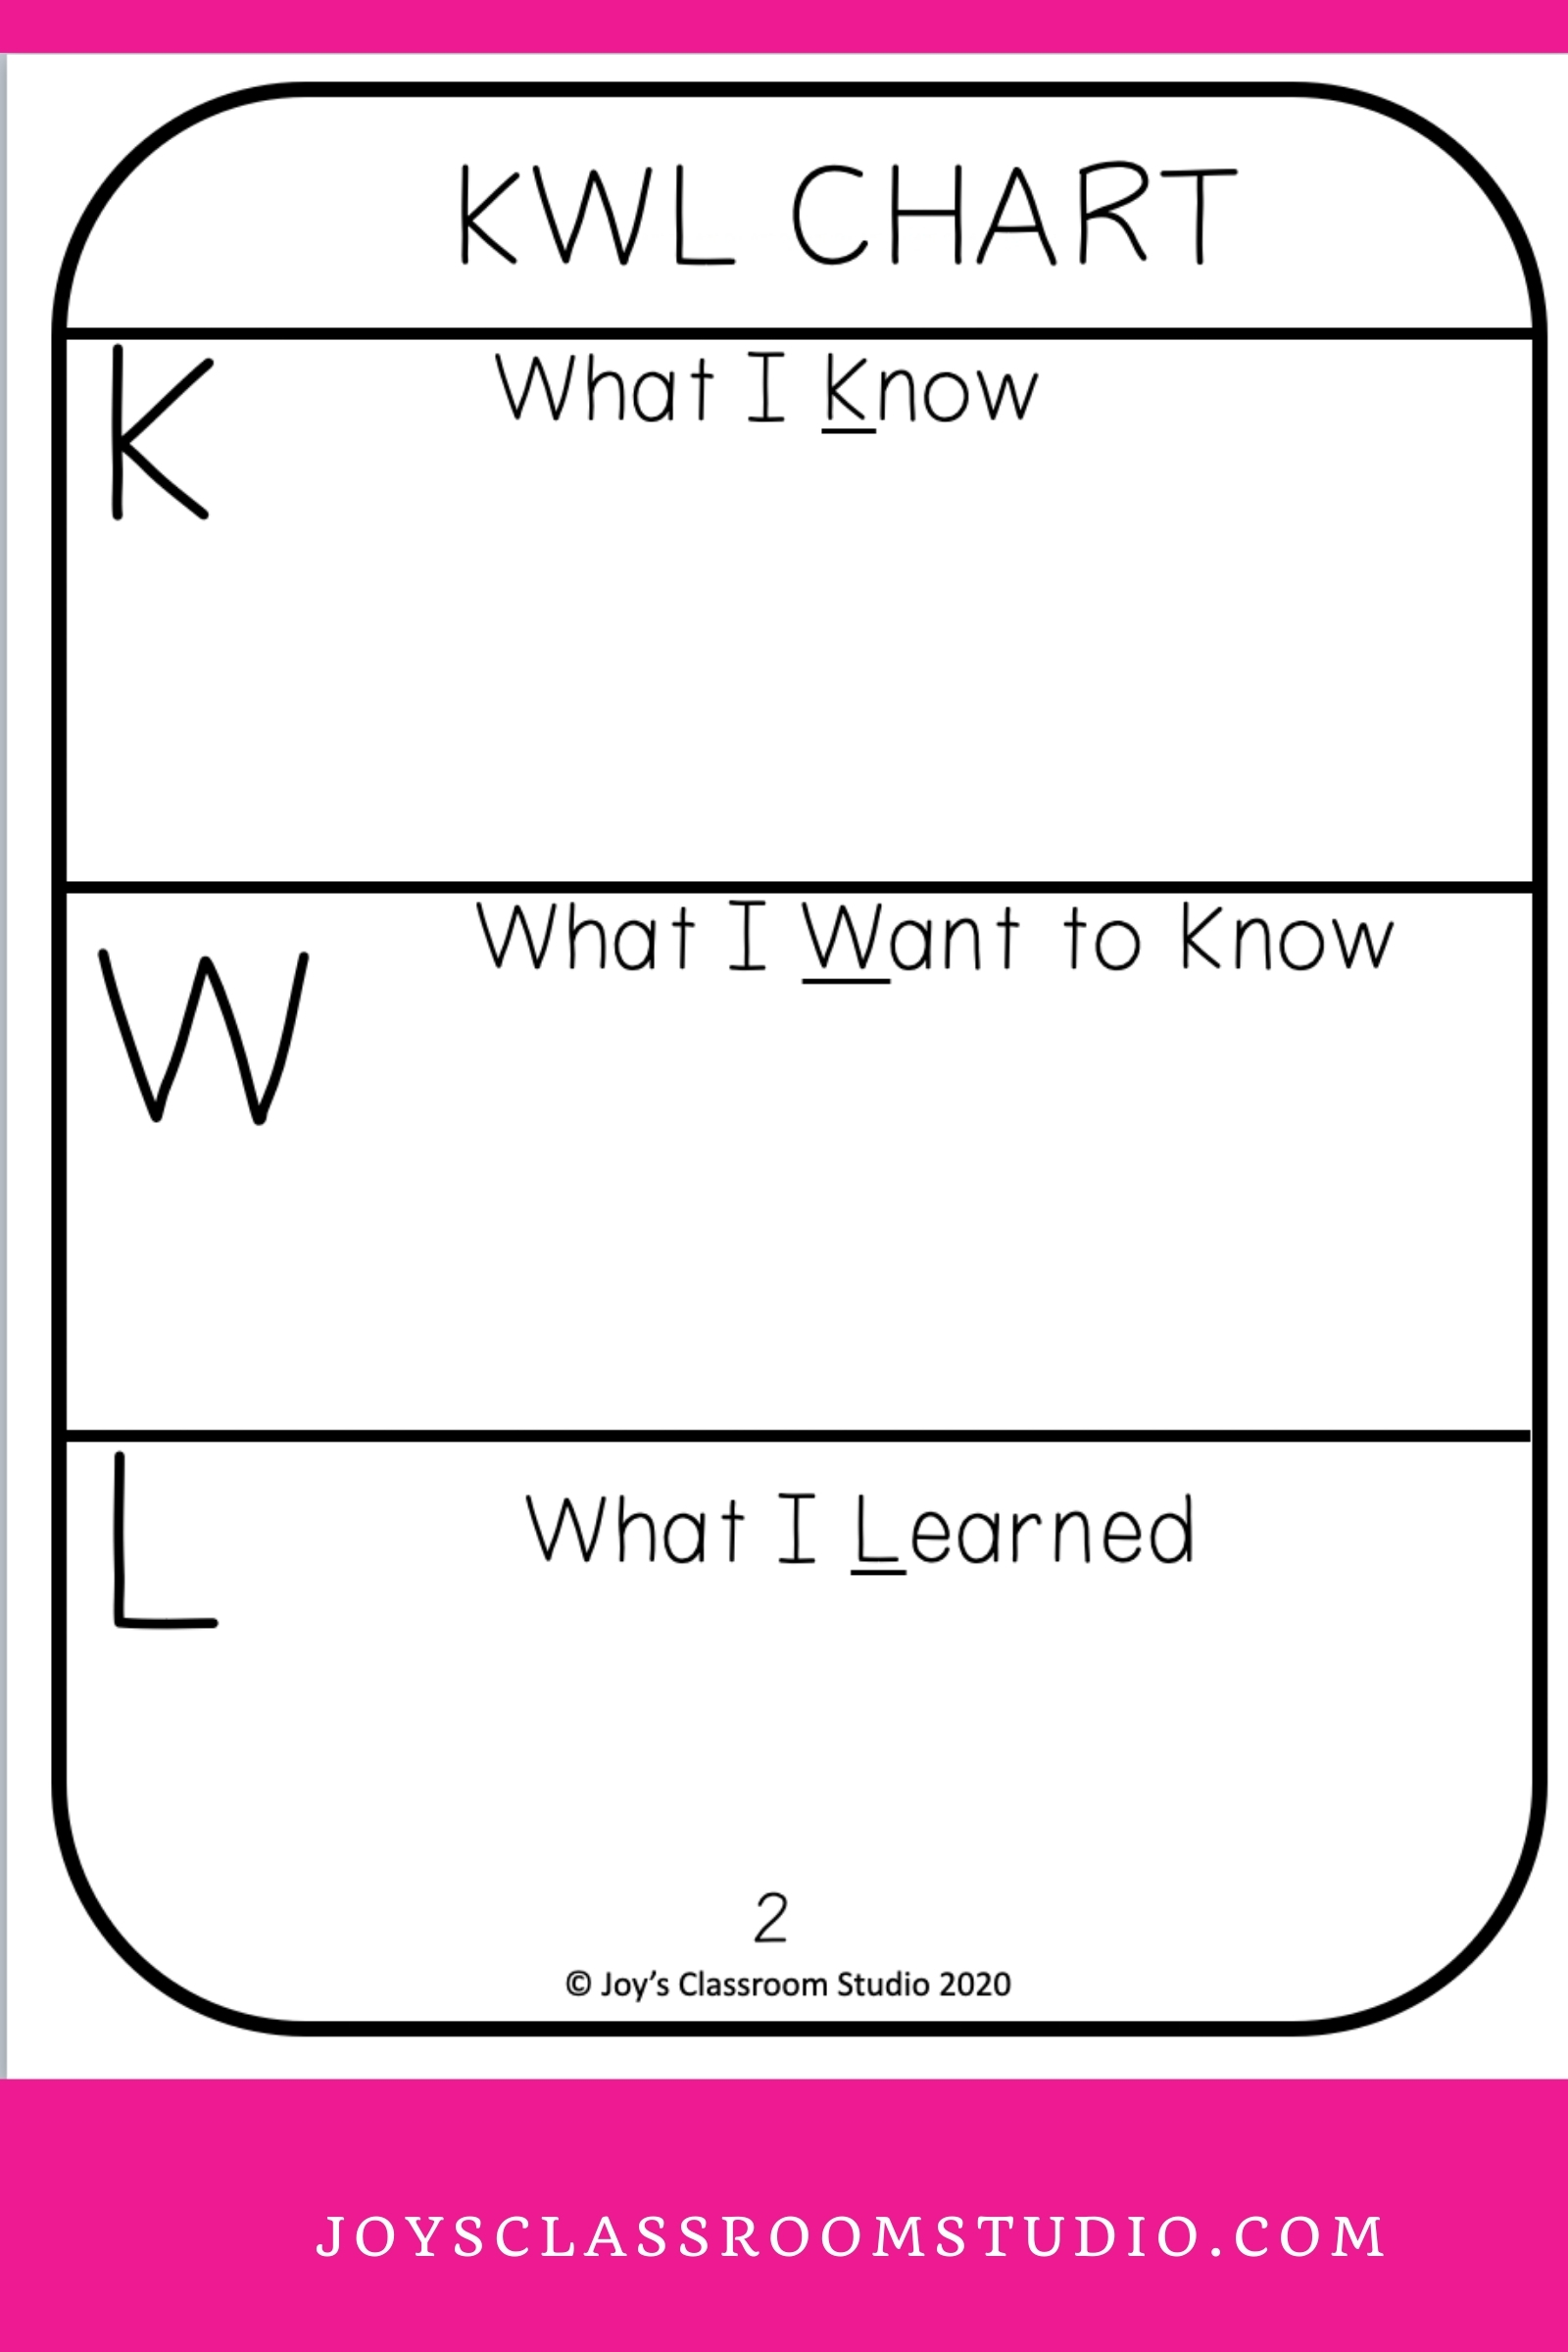 KWL Chart Example